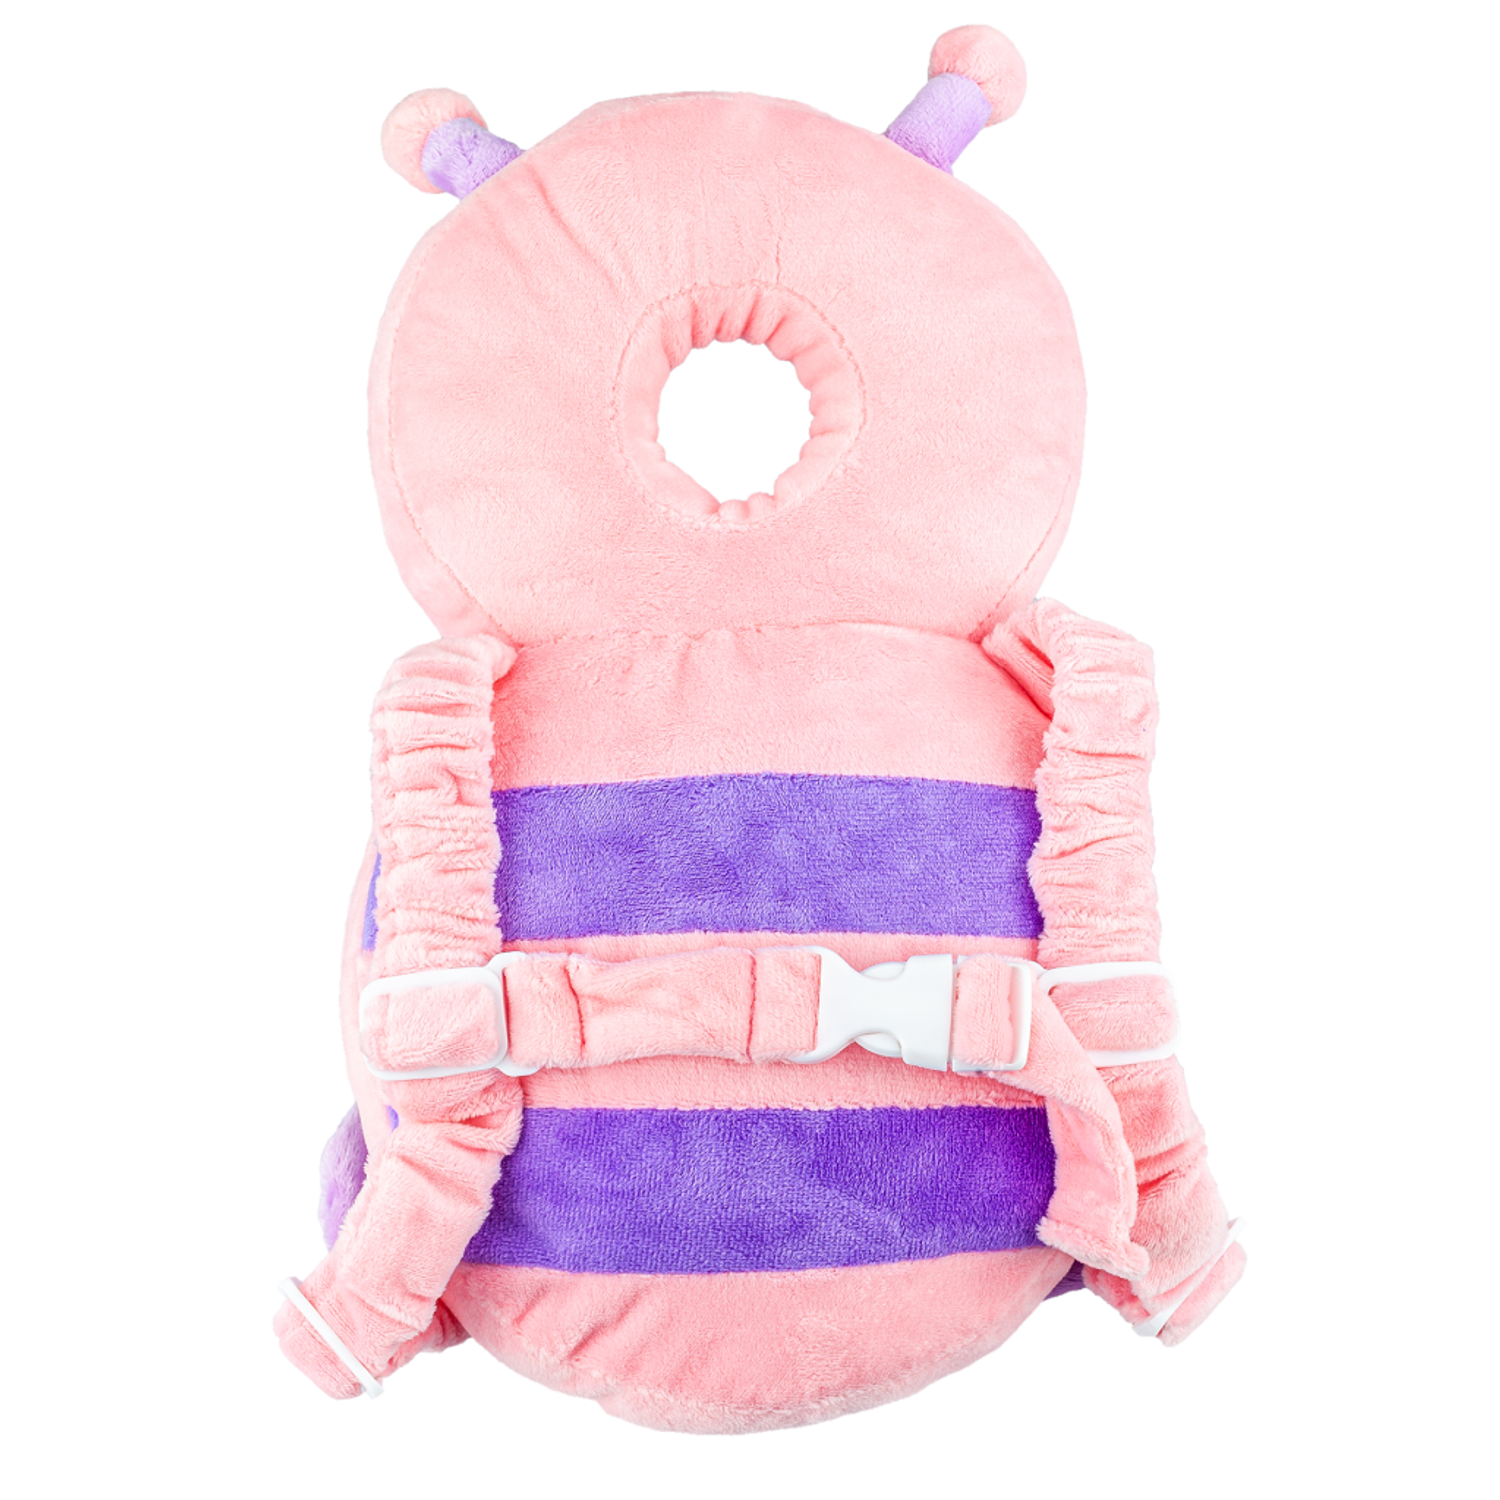 Защита для головы малыша Solmax защитная подушка-рюкзачок для ребенка - фото 6